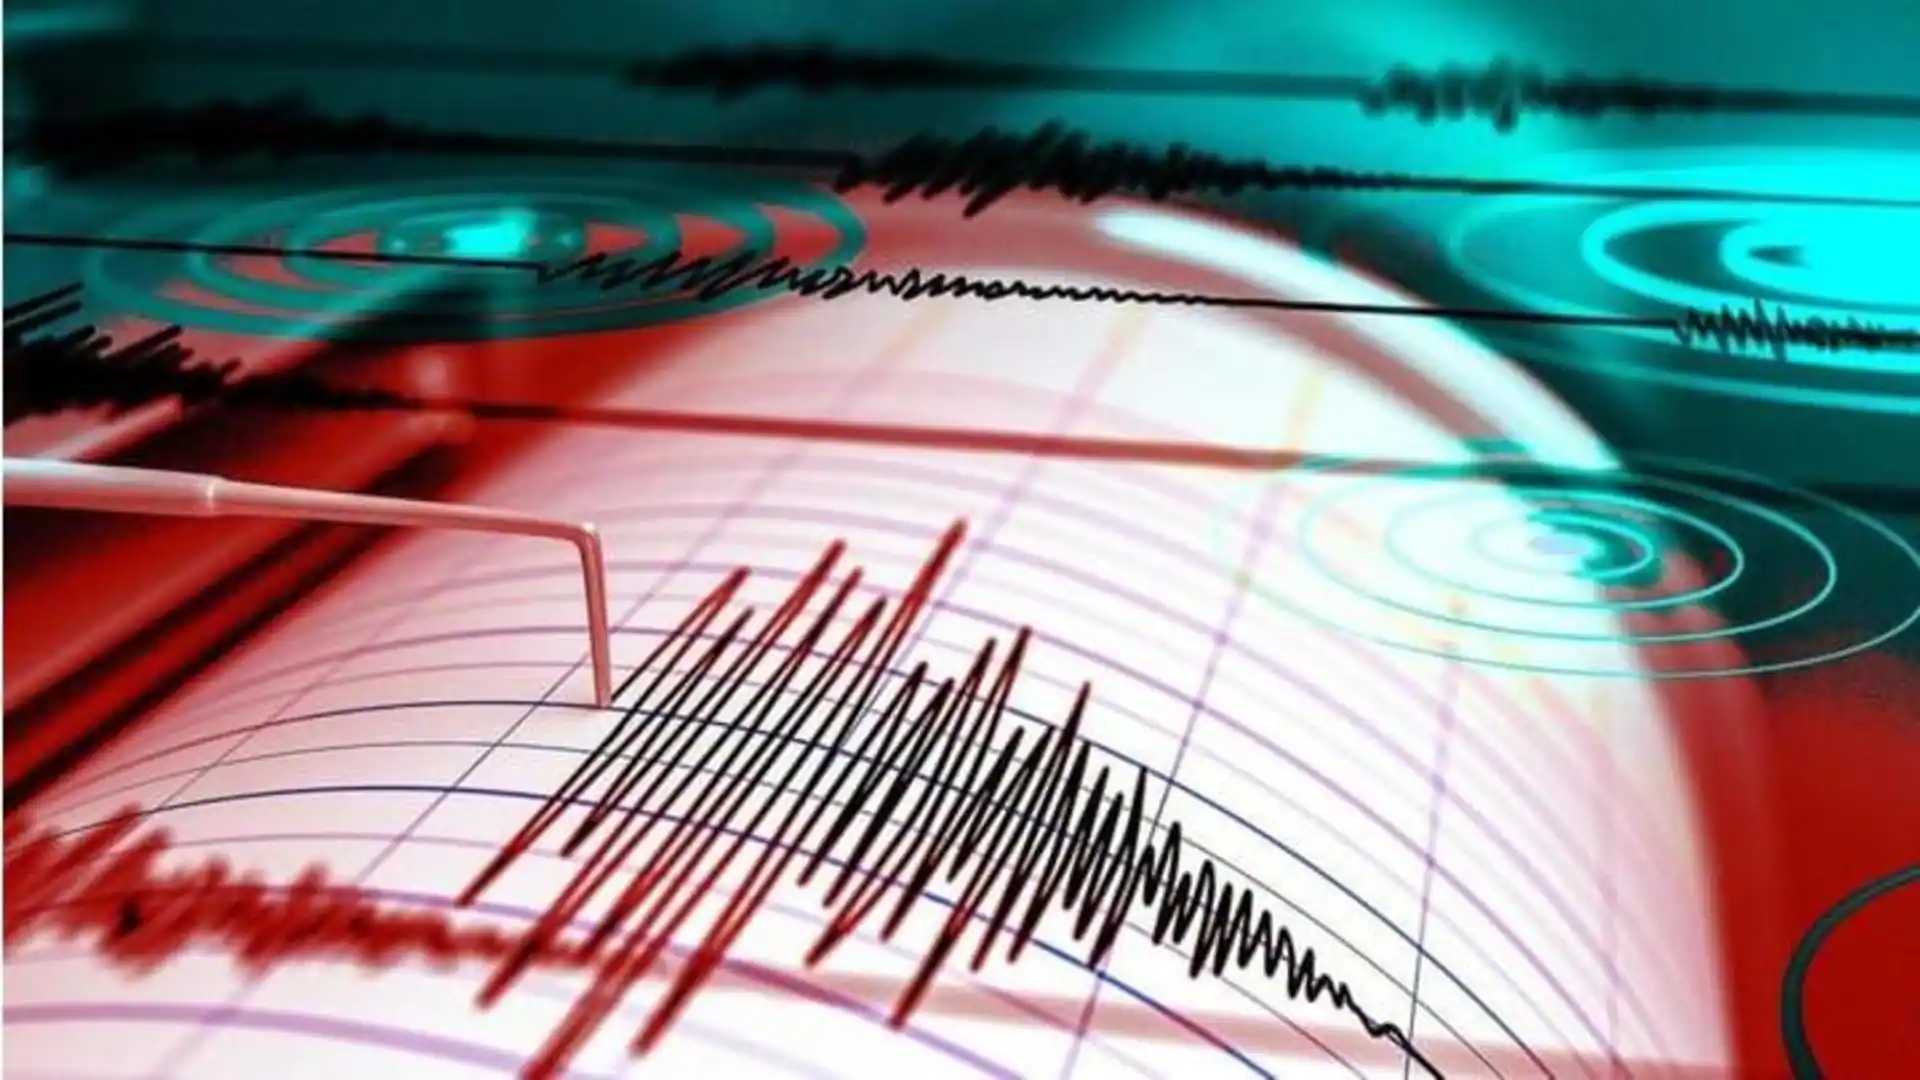  زلزال بقوة 5.9 درجات يضرب وسط اليابان